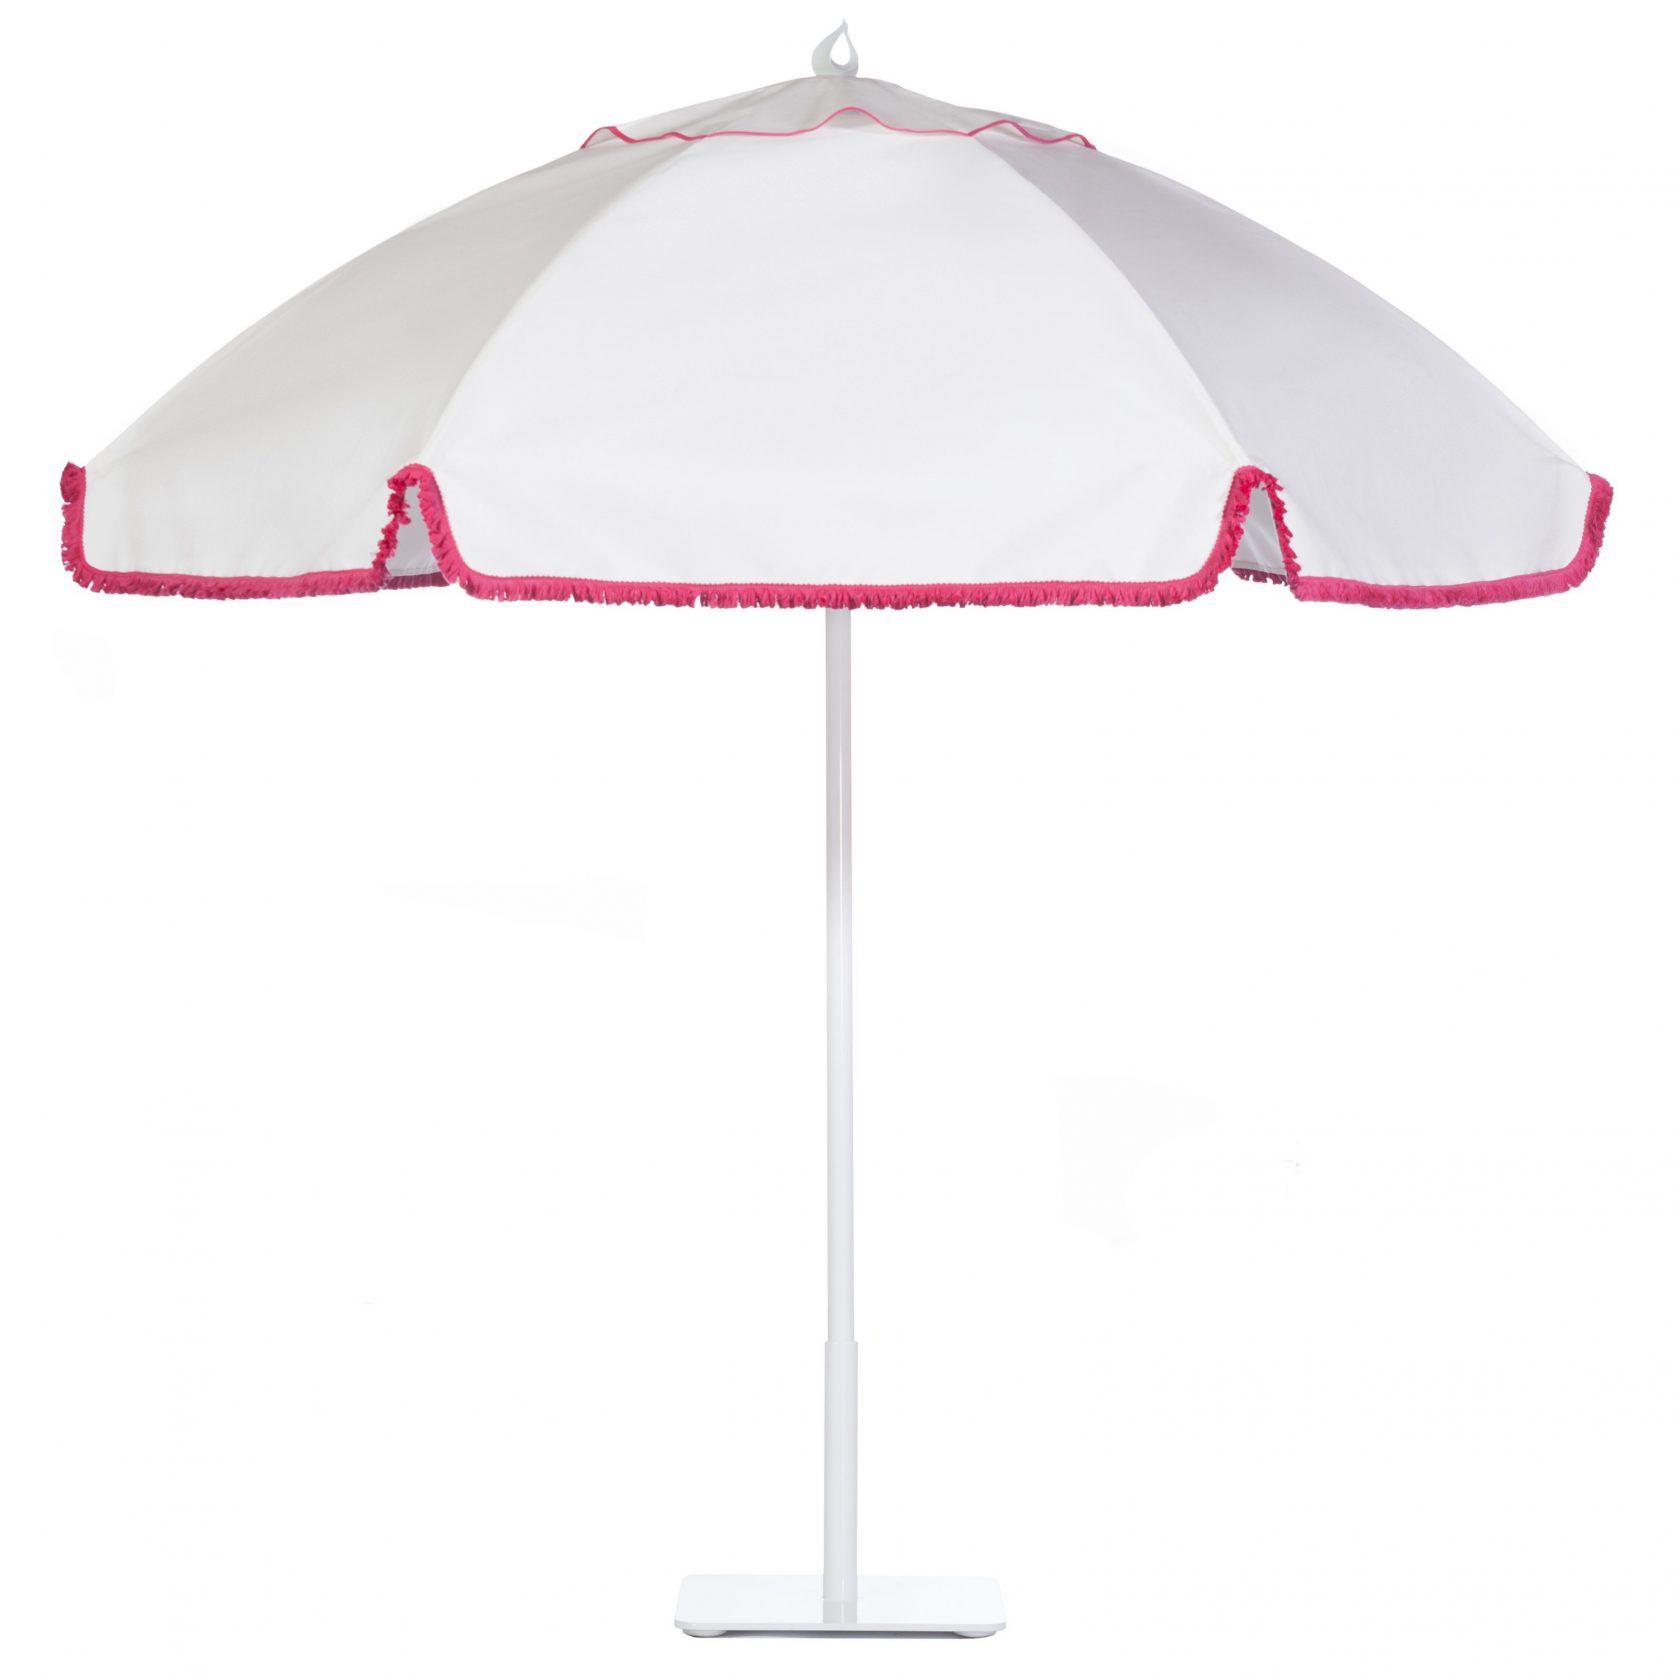 Whitecap Umbrella Image